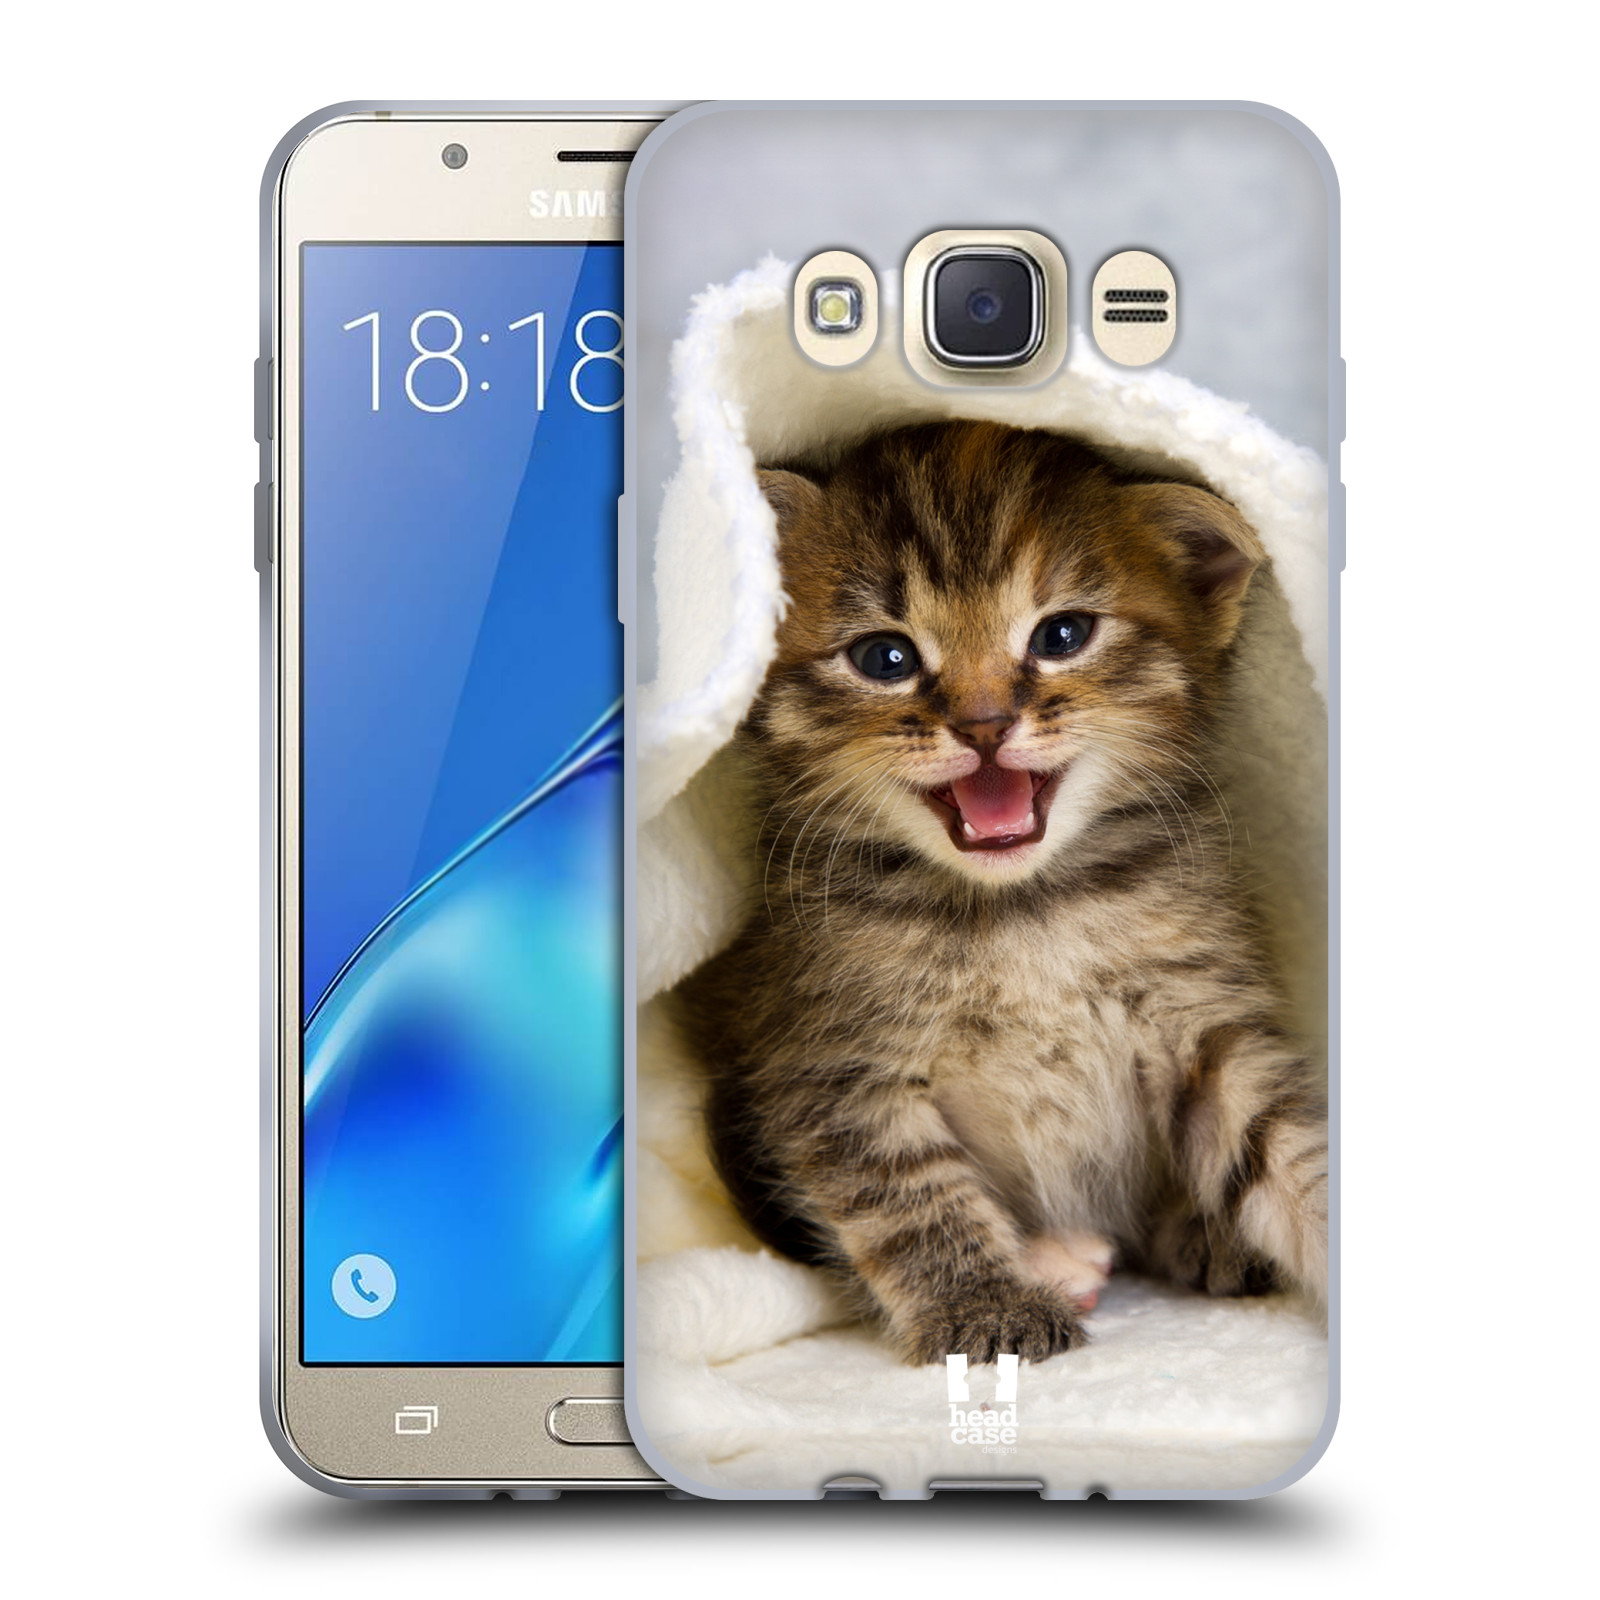 HEAD CASE silikonový obal, kryt na mobil Samsung Galaxy J7 2016 (J710, J710F) vzor Kočičky koťata foto kotě v ručníku